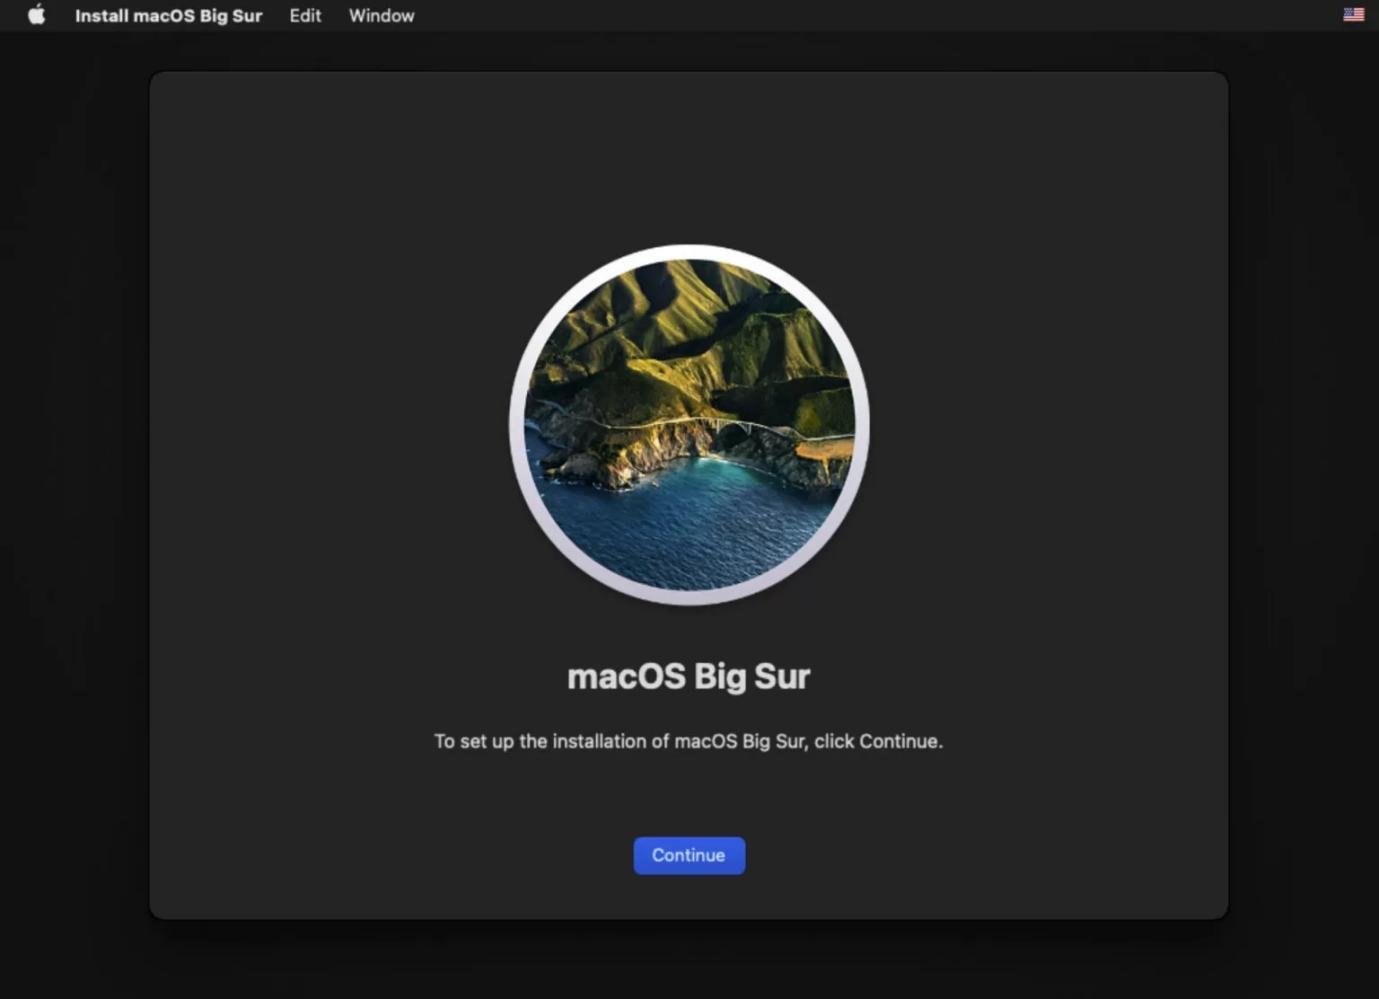 réinstaller Macos étape 2 | Pas de disque de démarrage sur Mac